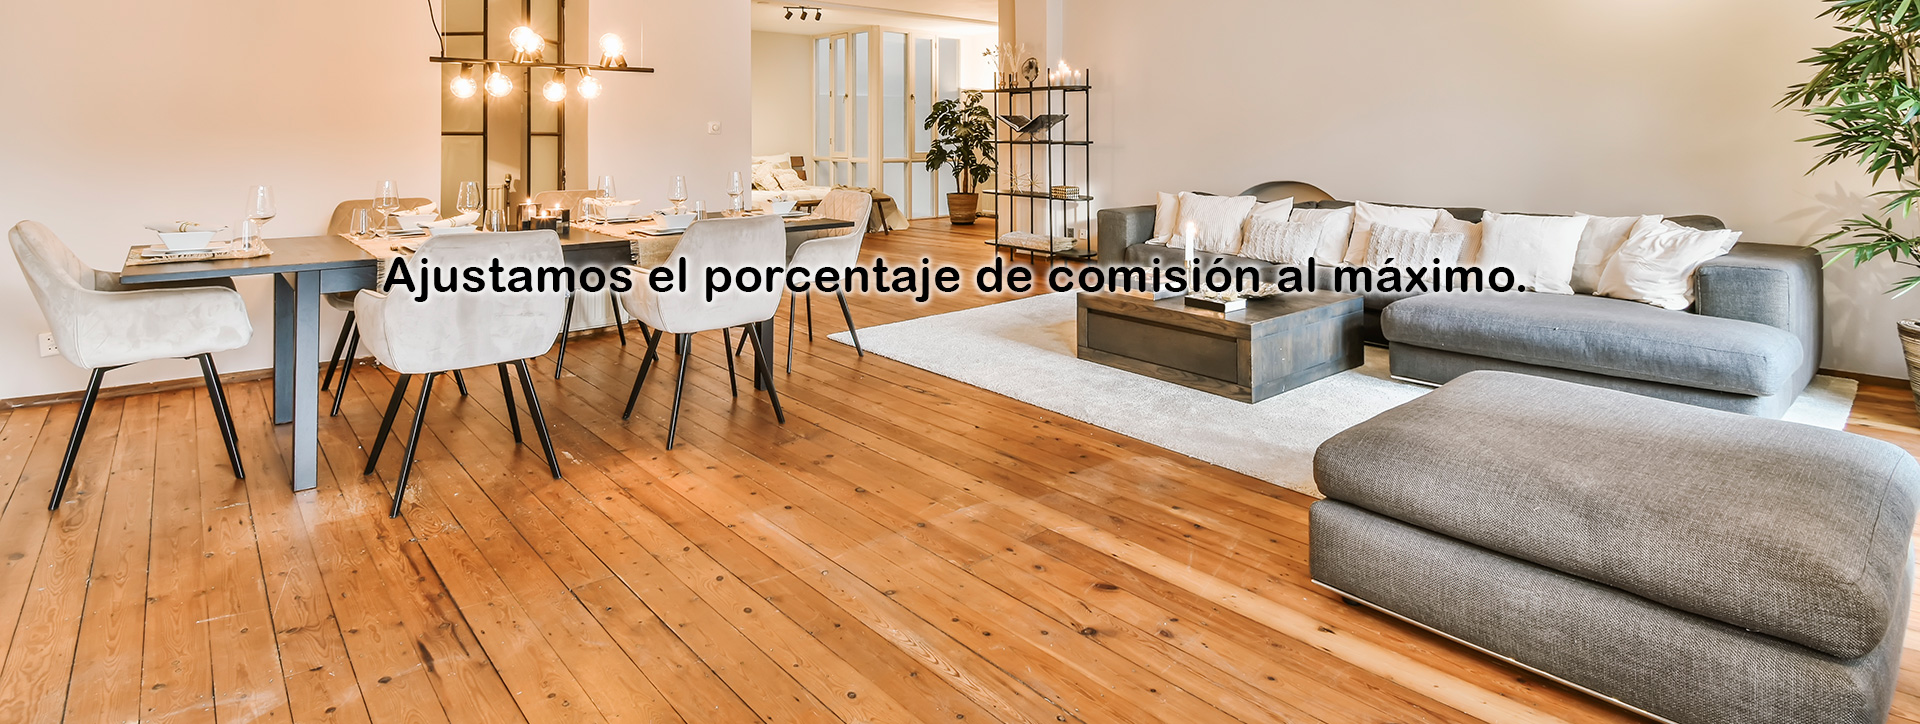 En inmobiliaria Apiastorga, Nos dedicamos a la venta casas y pisos en Reus, Costa Dorada, contando en nuestra plantilla con grandes profesionales siempre a disposición del cliente.